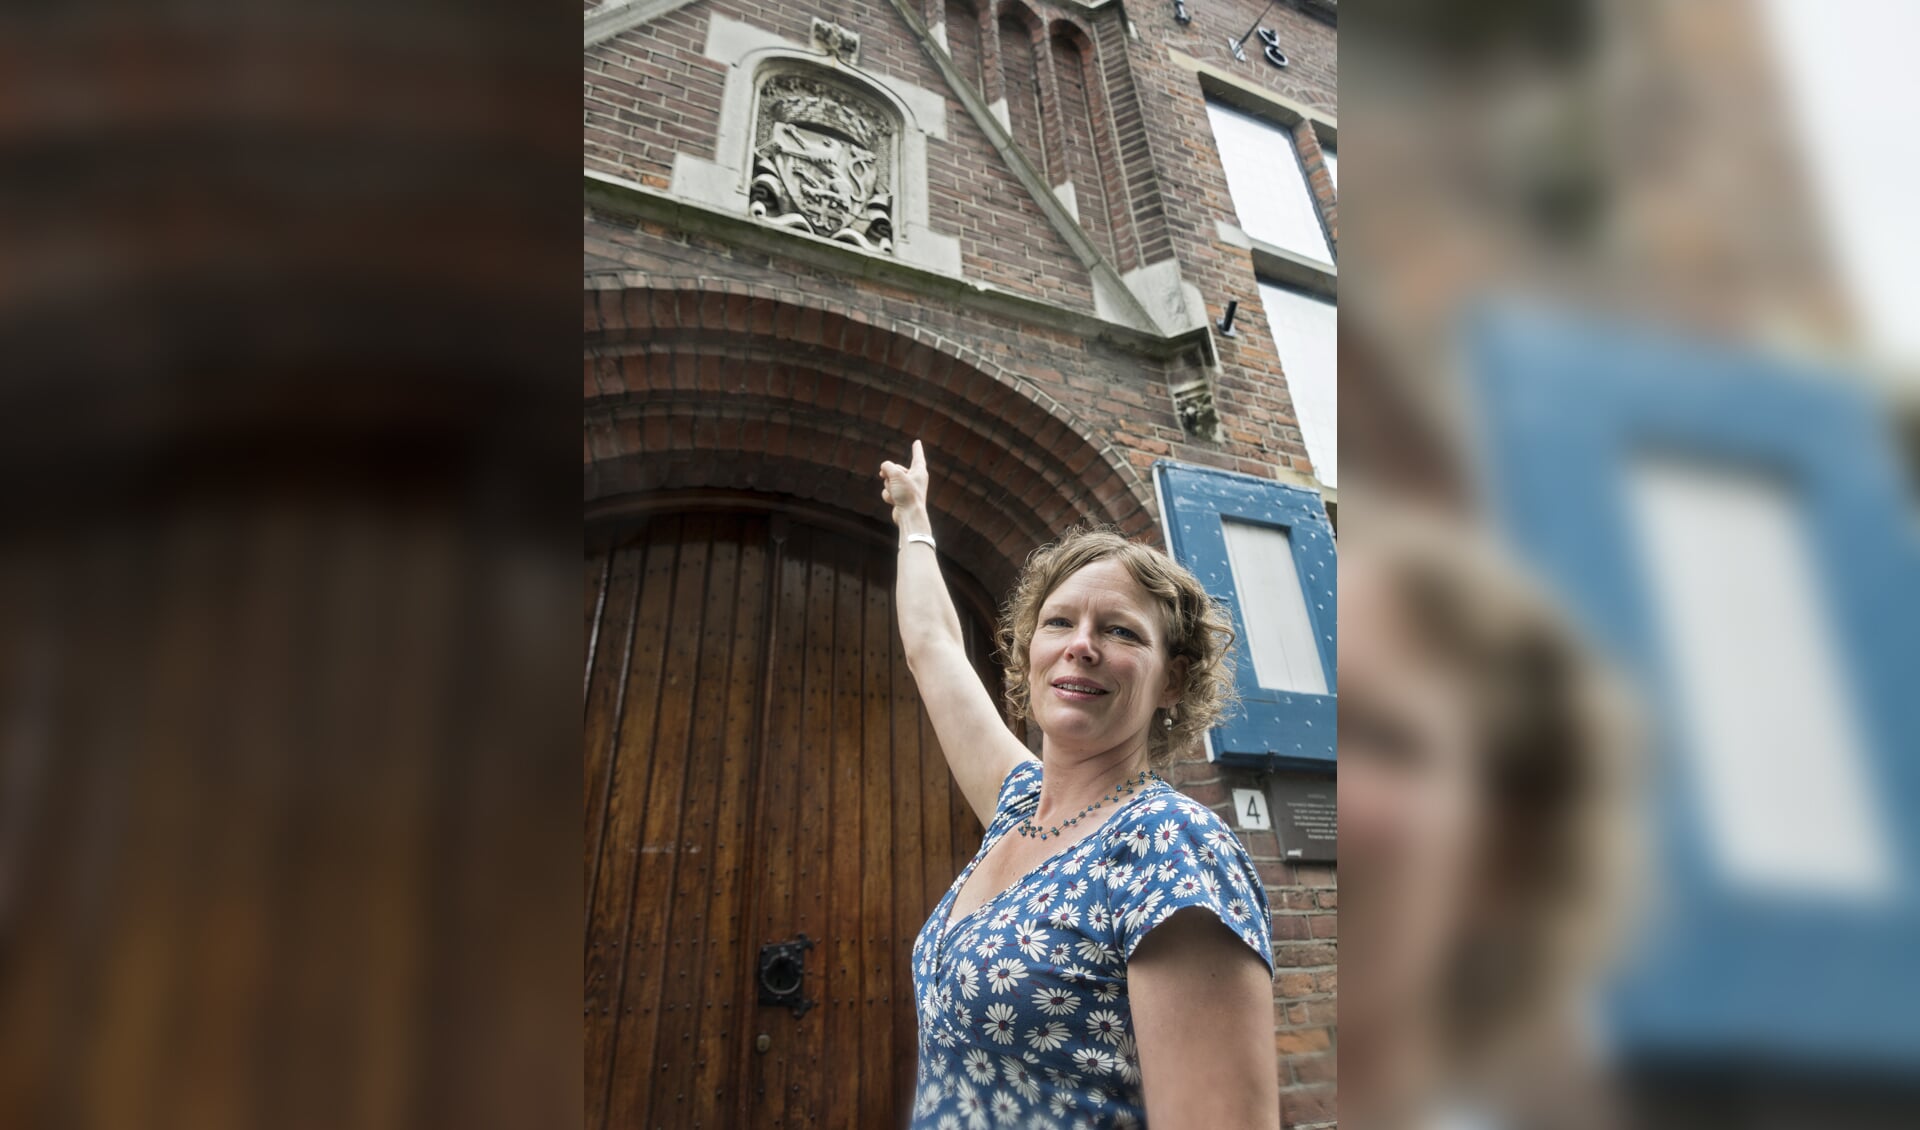 Alize Hillebrink bij de leeuw in het wapen van Zutphen. Foto: Bram Wassink